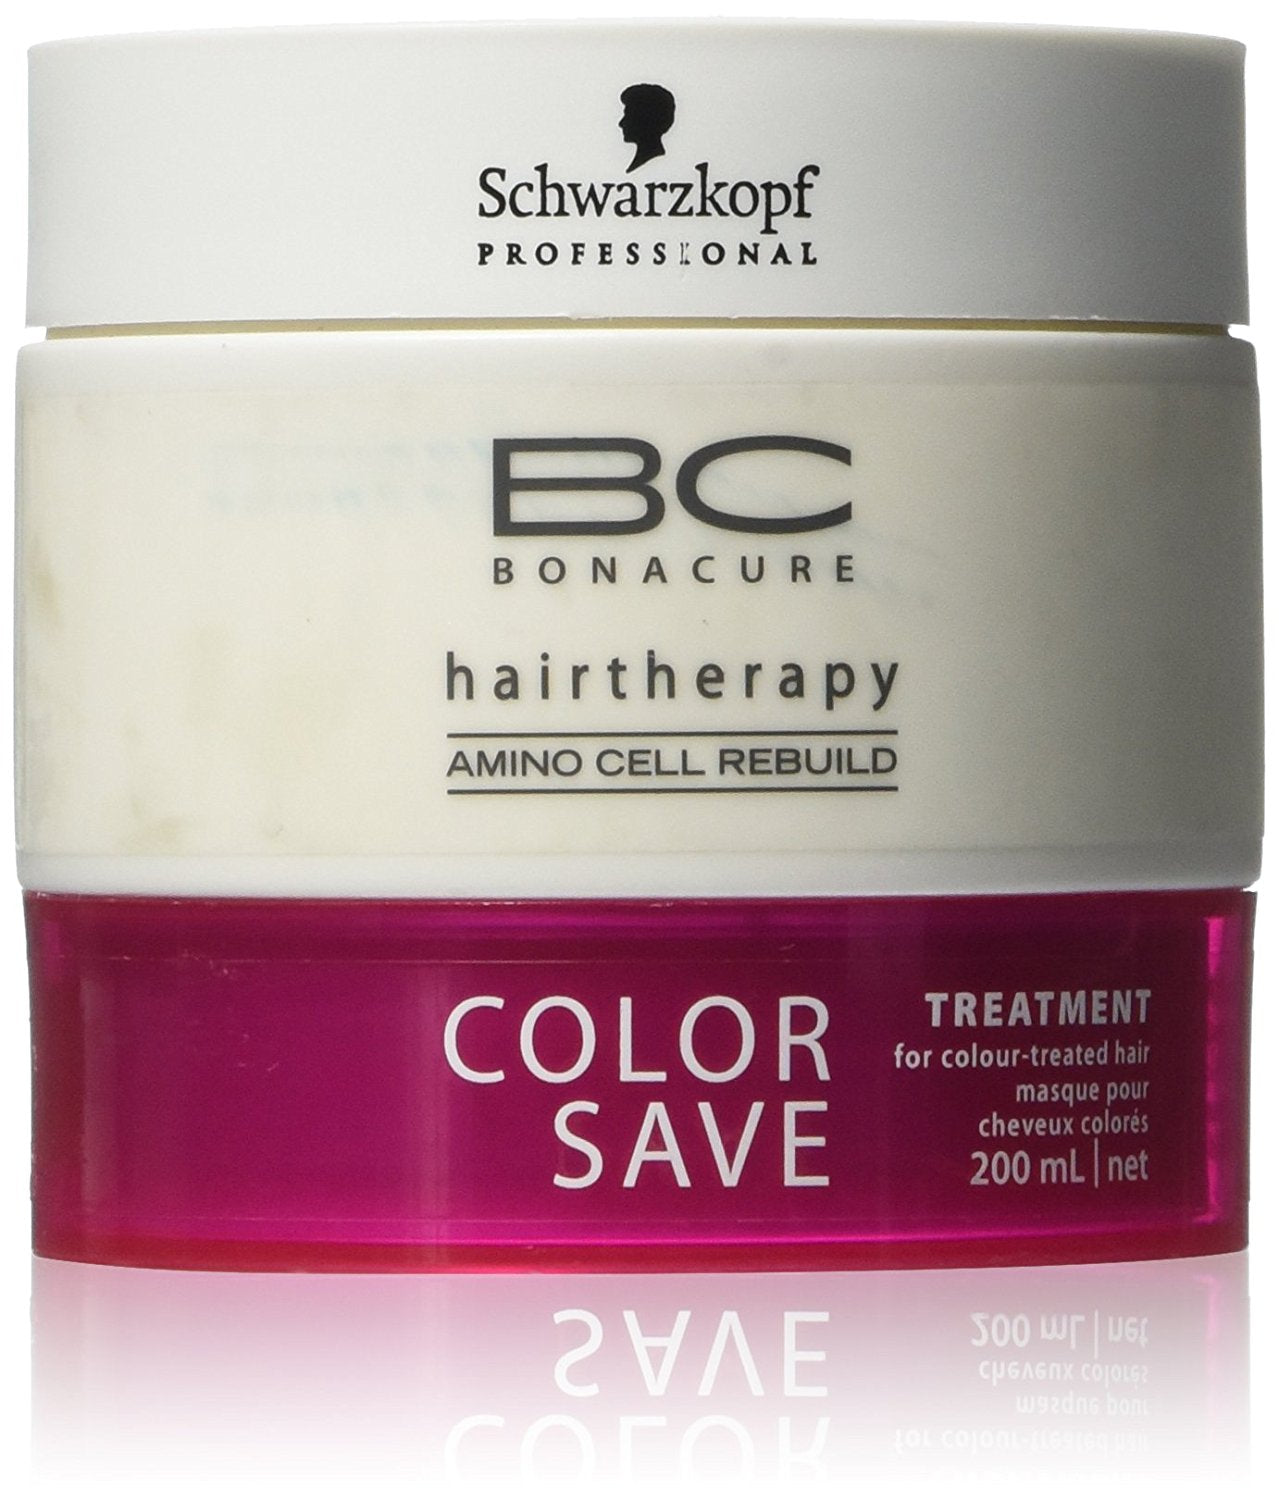 Schwarzkopf Bonacure Color Save Treatment